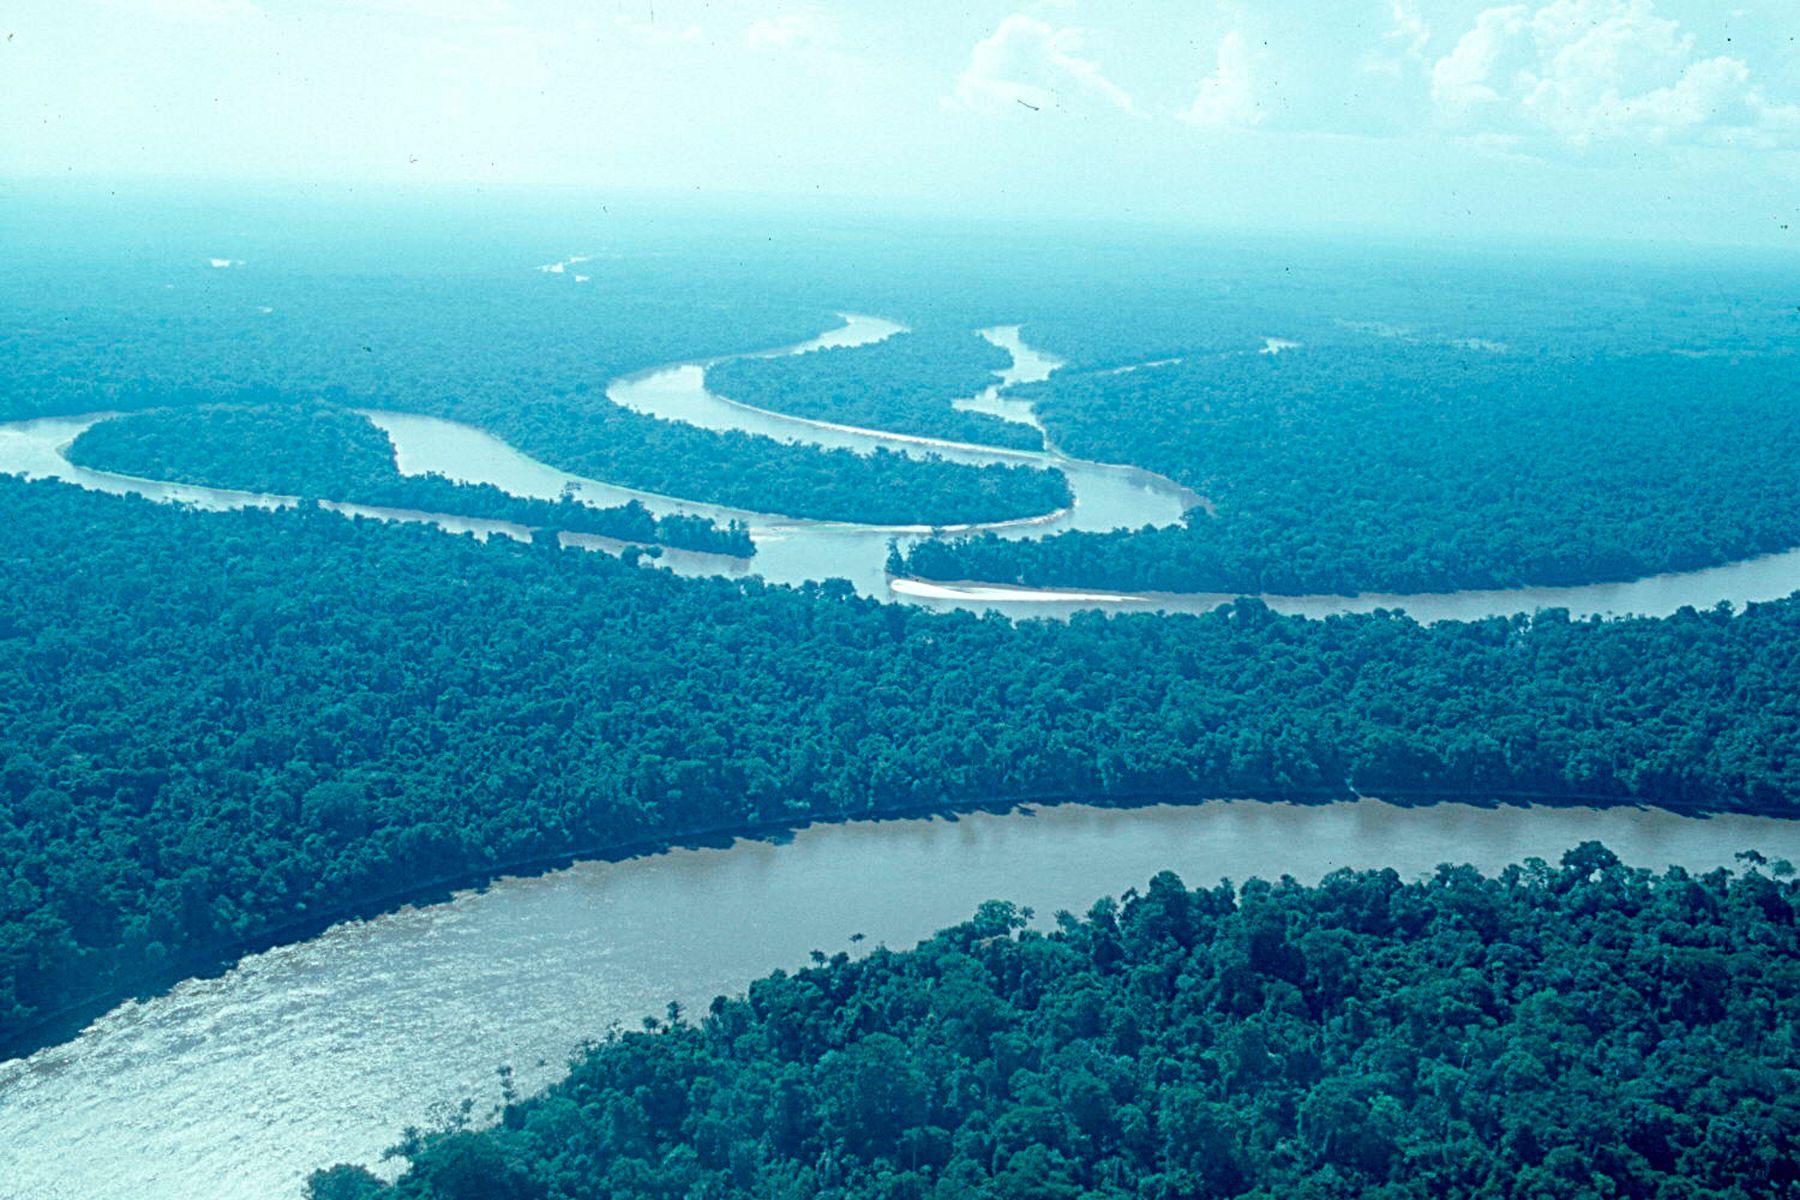 La Reserva Nacional Allpahuayo Mishana protege una singular combinación de ecosistemas de distinto origen de la cuenca baja del río Nanay. Foto: ANDINA / Reserva Nacional Allpahuayo Mishana.